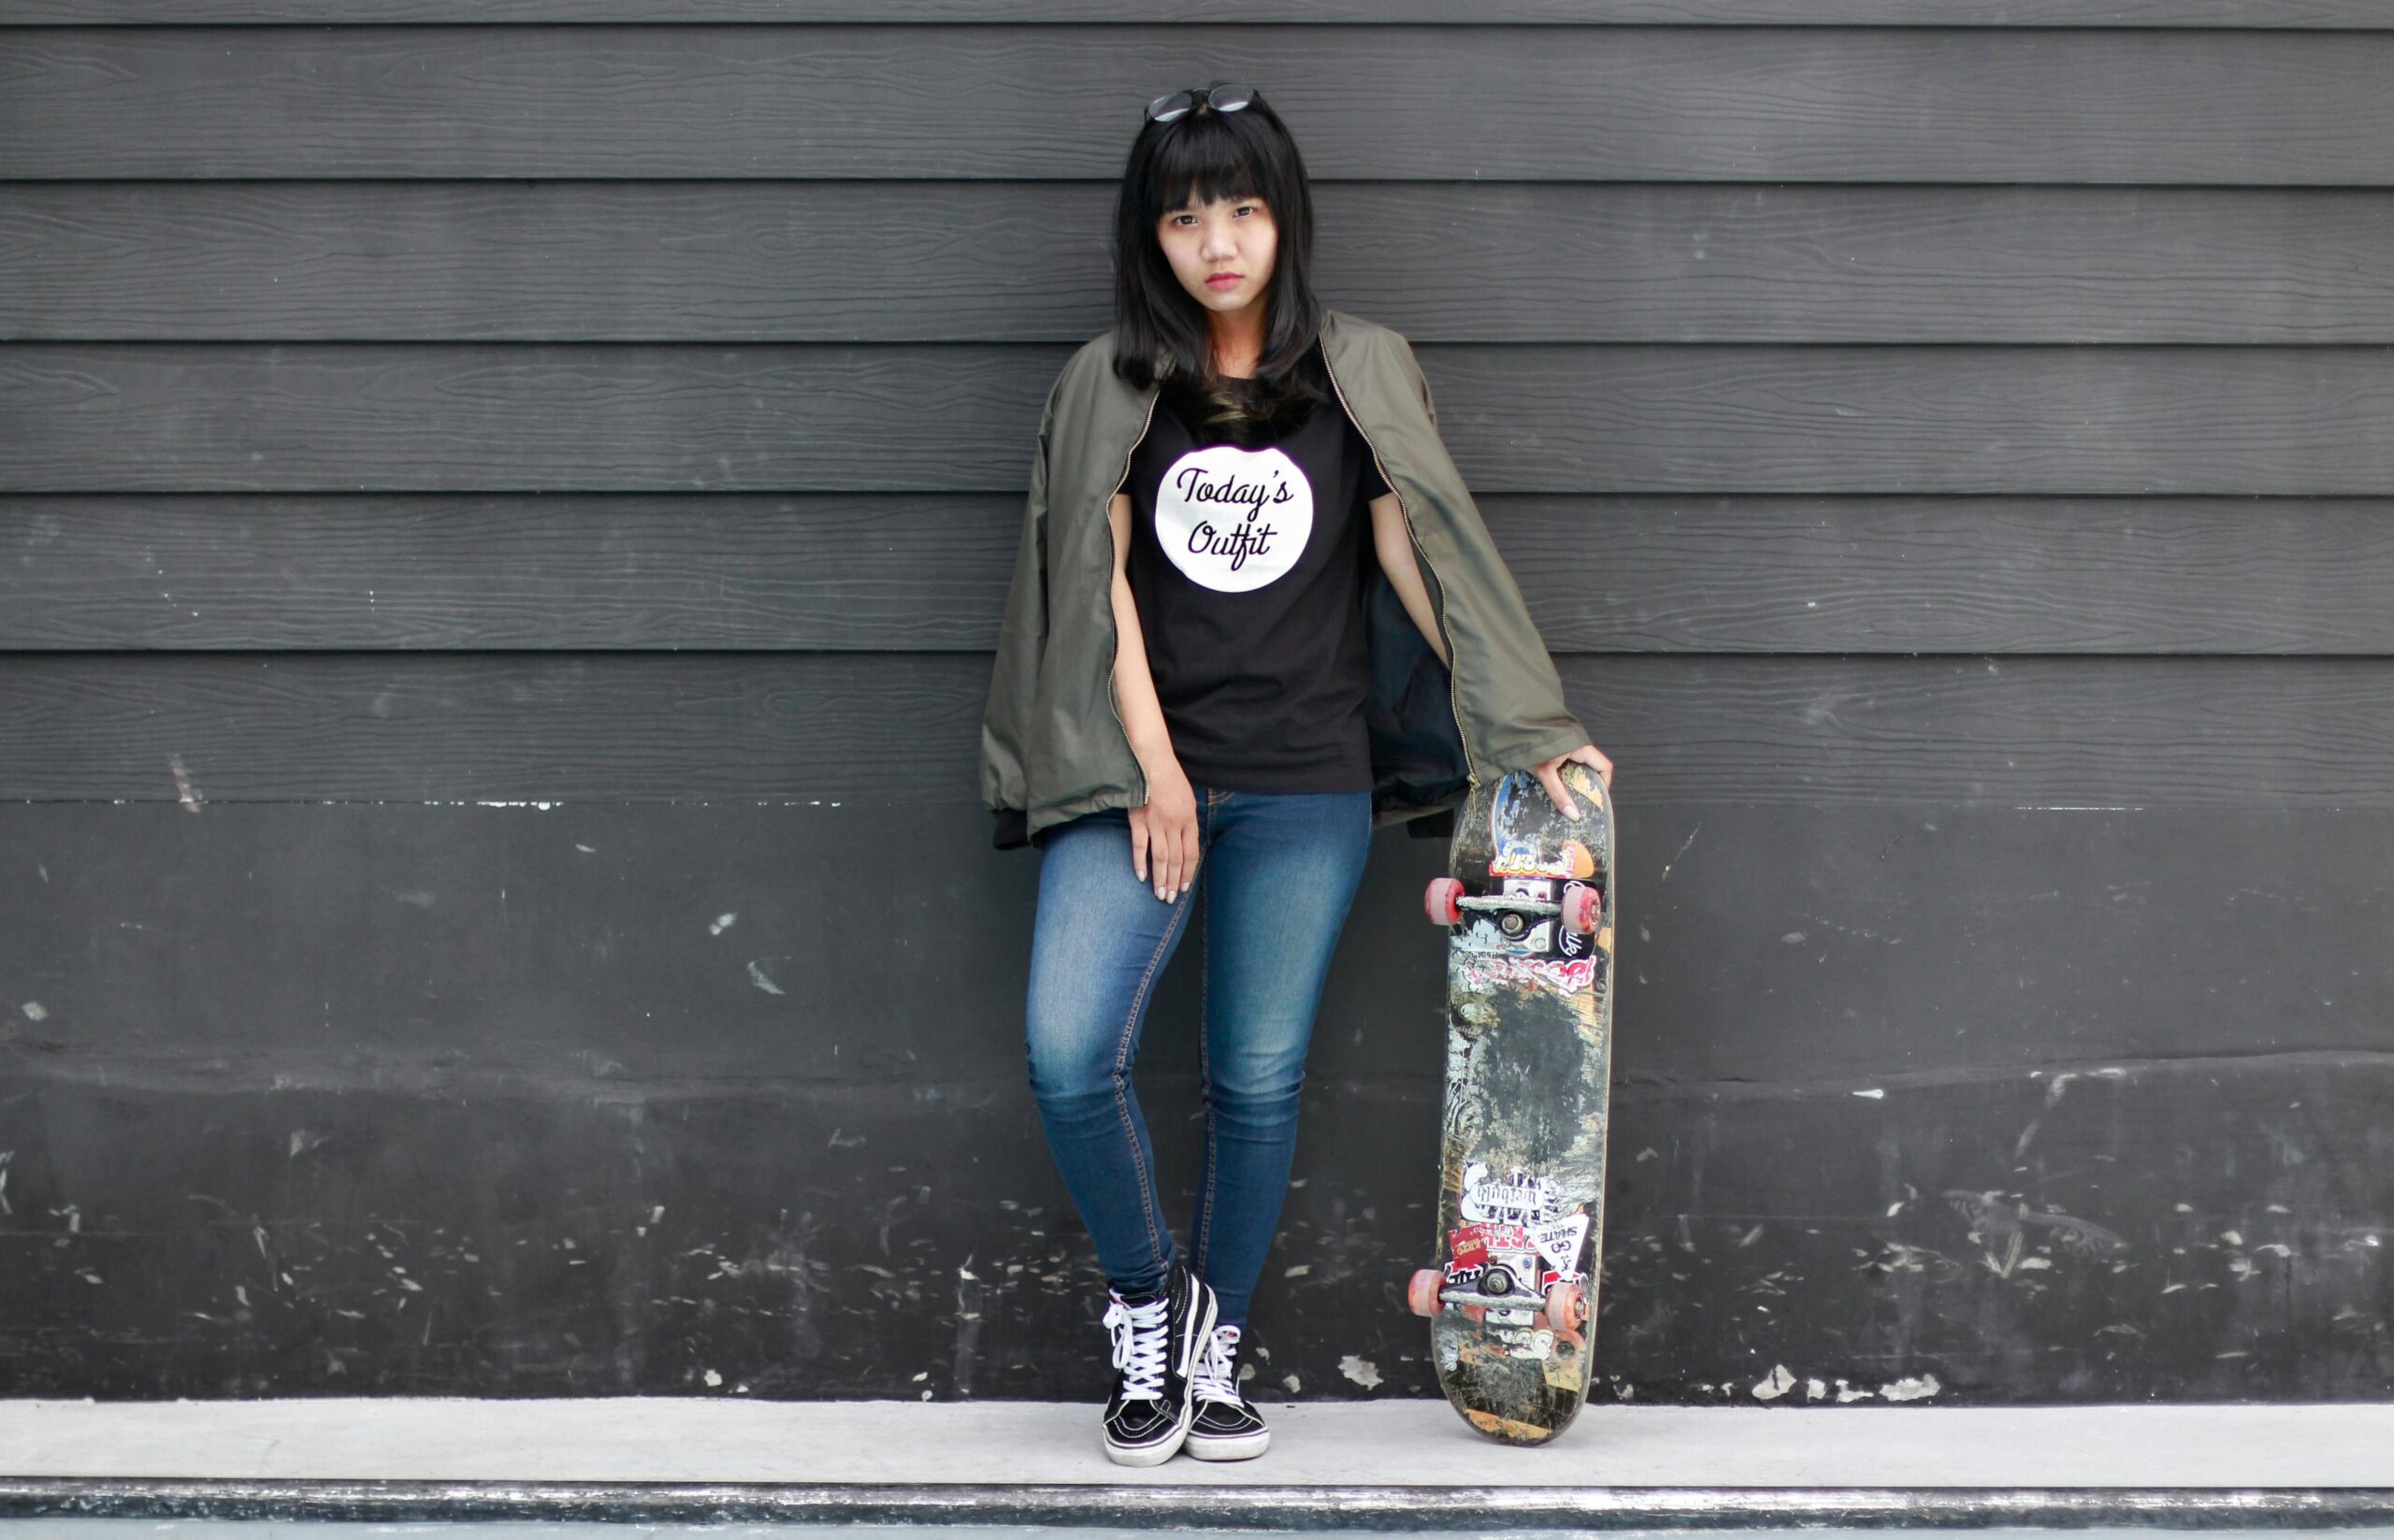 Vers une égalité dans le monde du skateboard, les défis du skate féminin